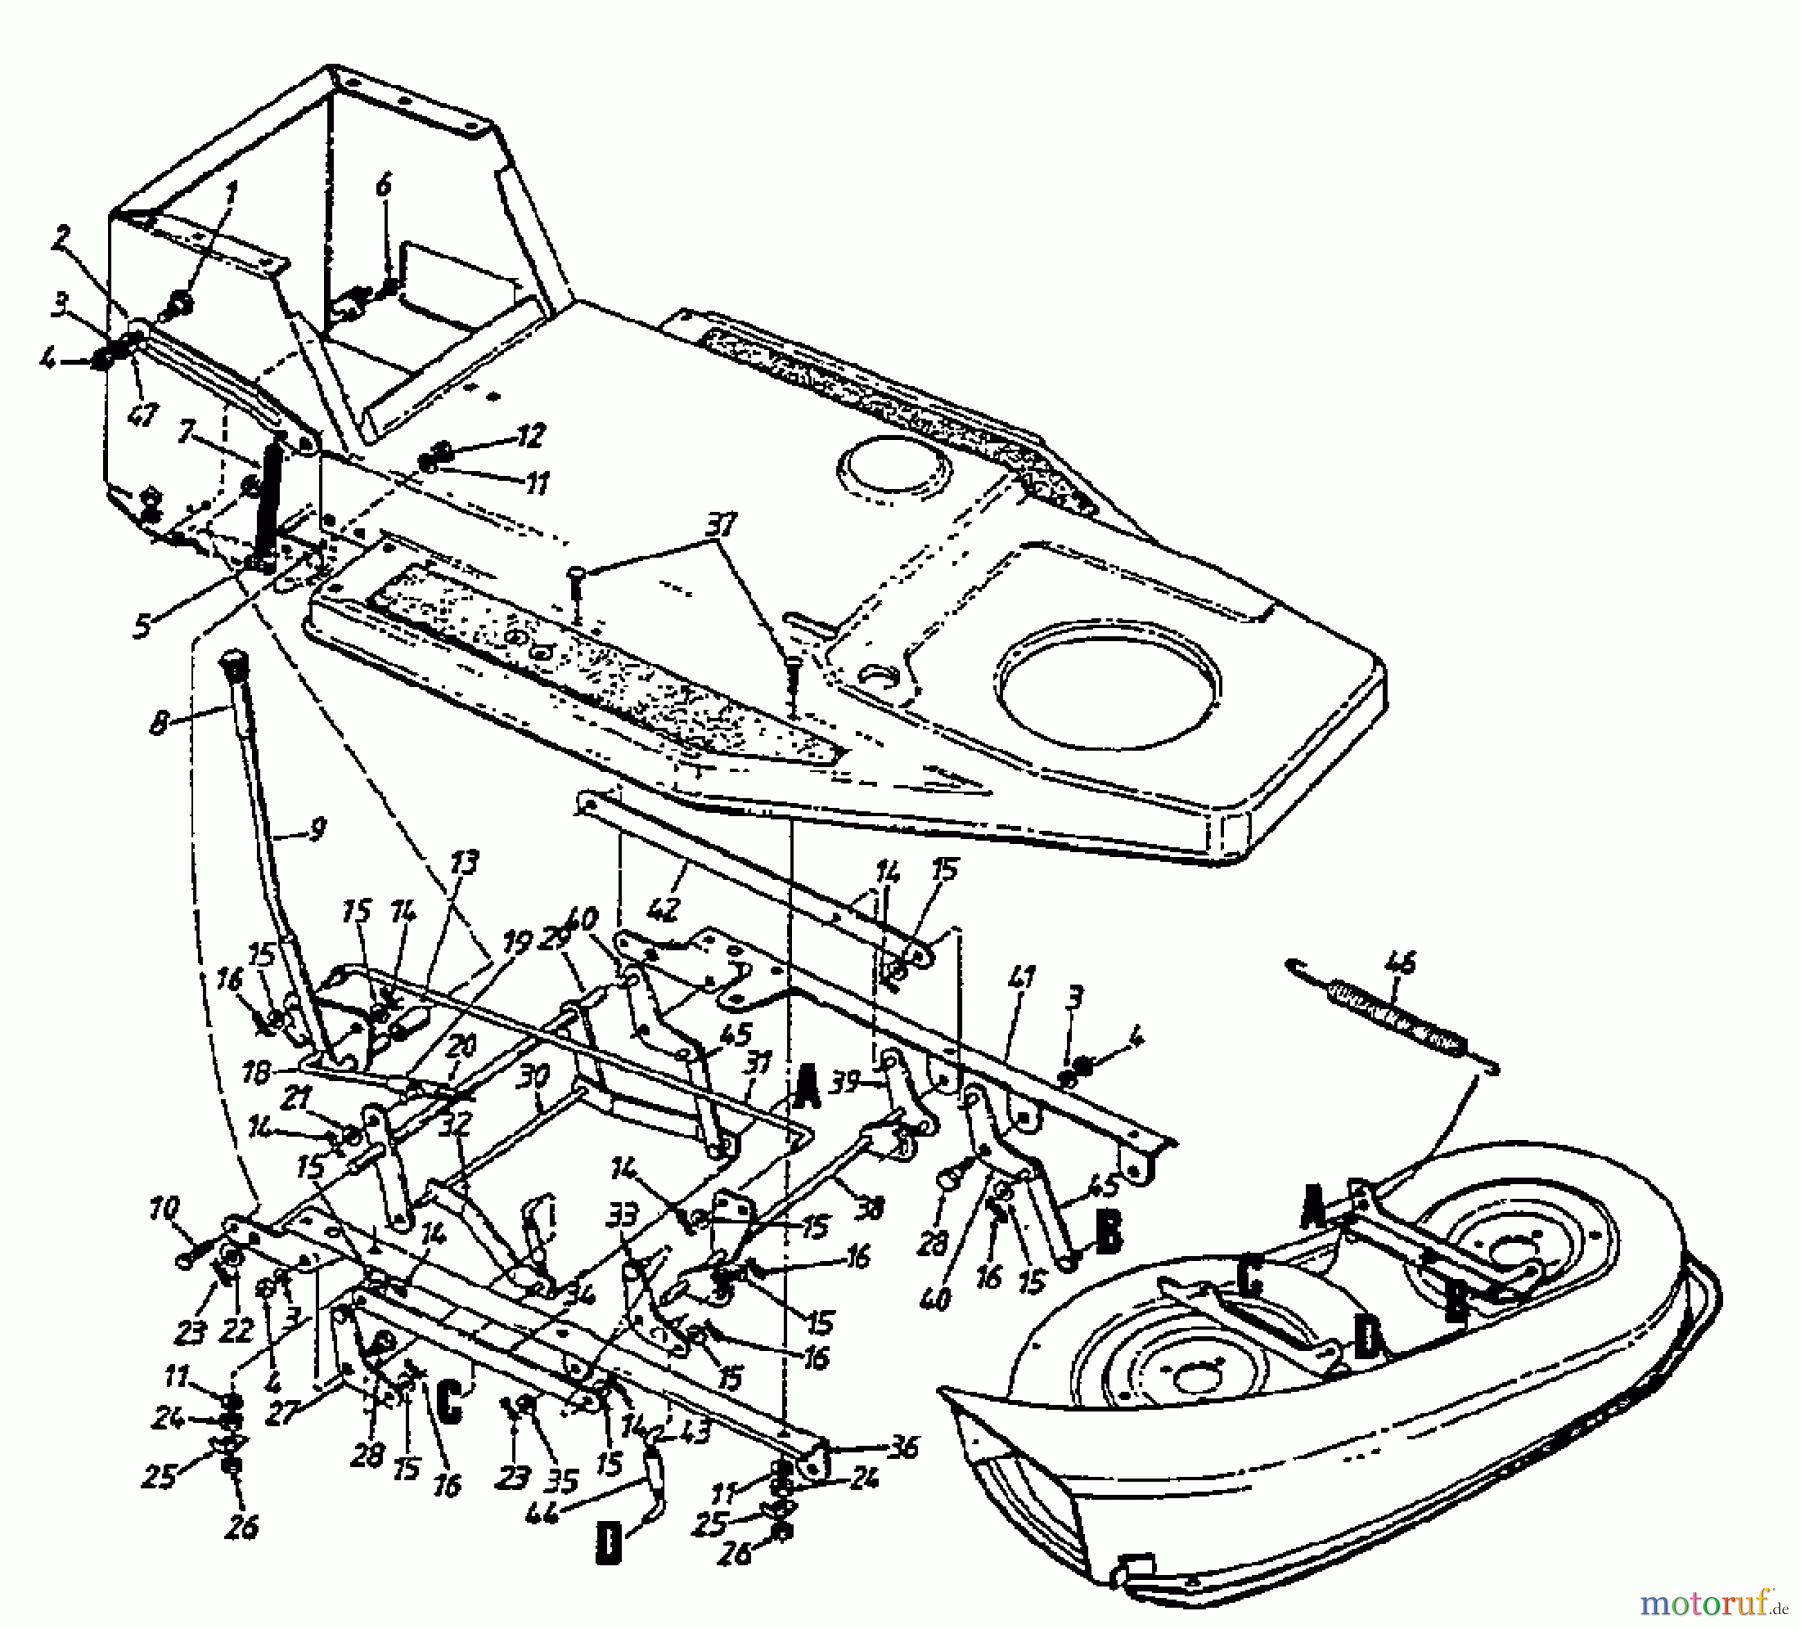  Gardol Rasentraktoren 12/91 133I471E668  (1993) Mähwerksaushebung